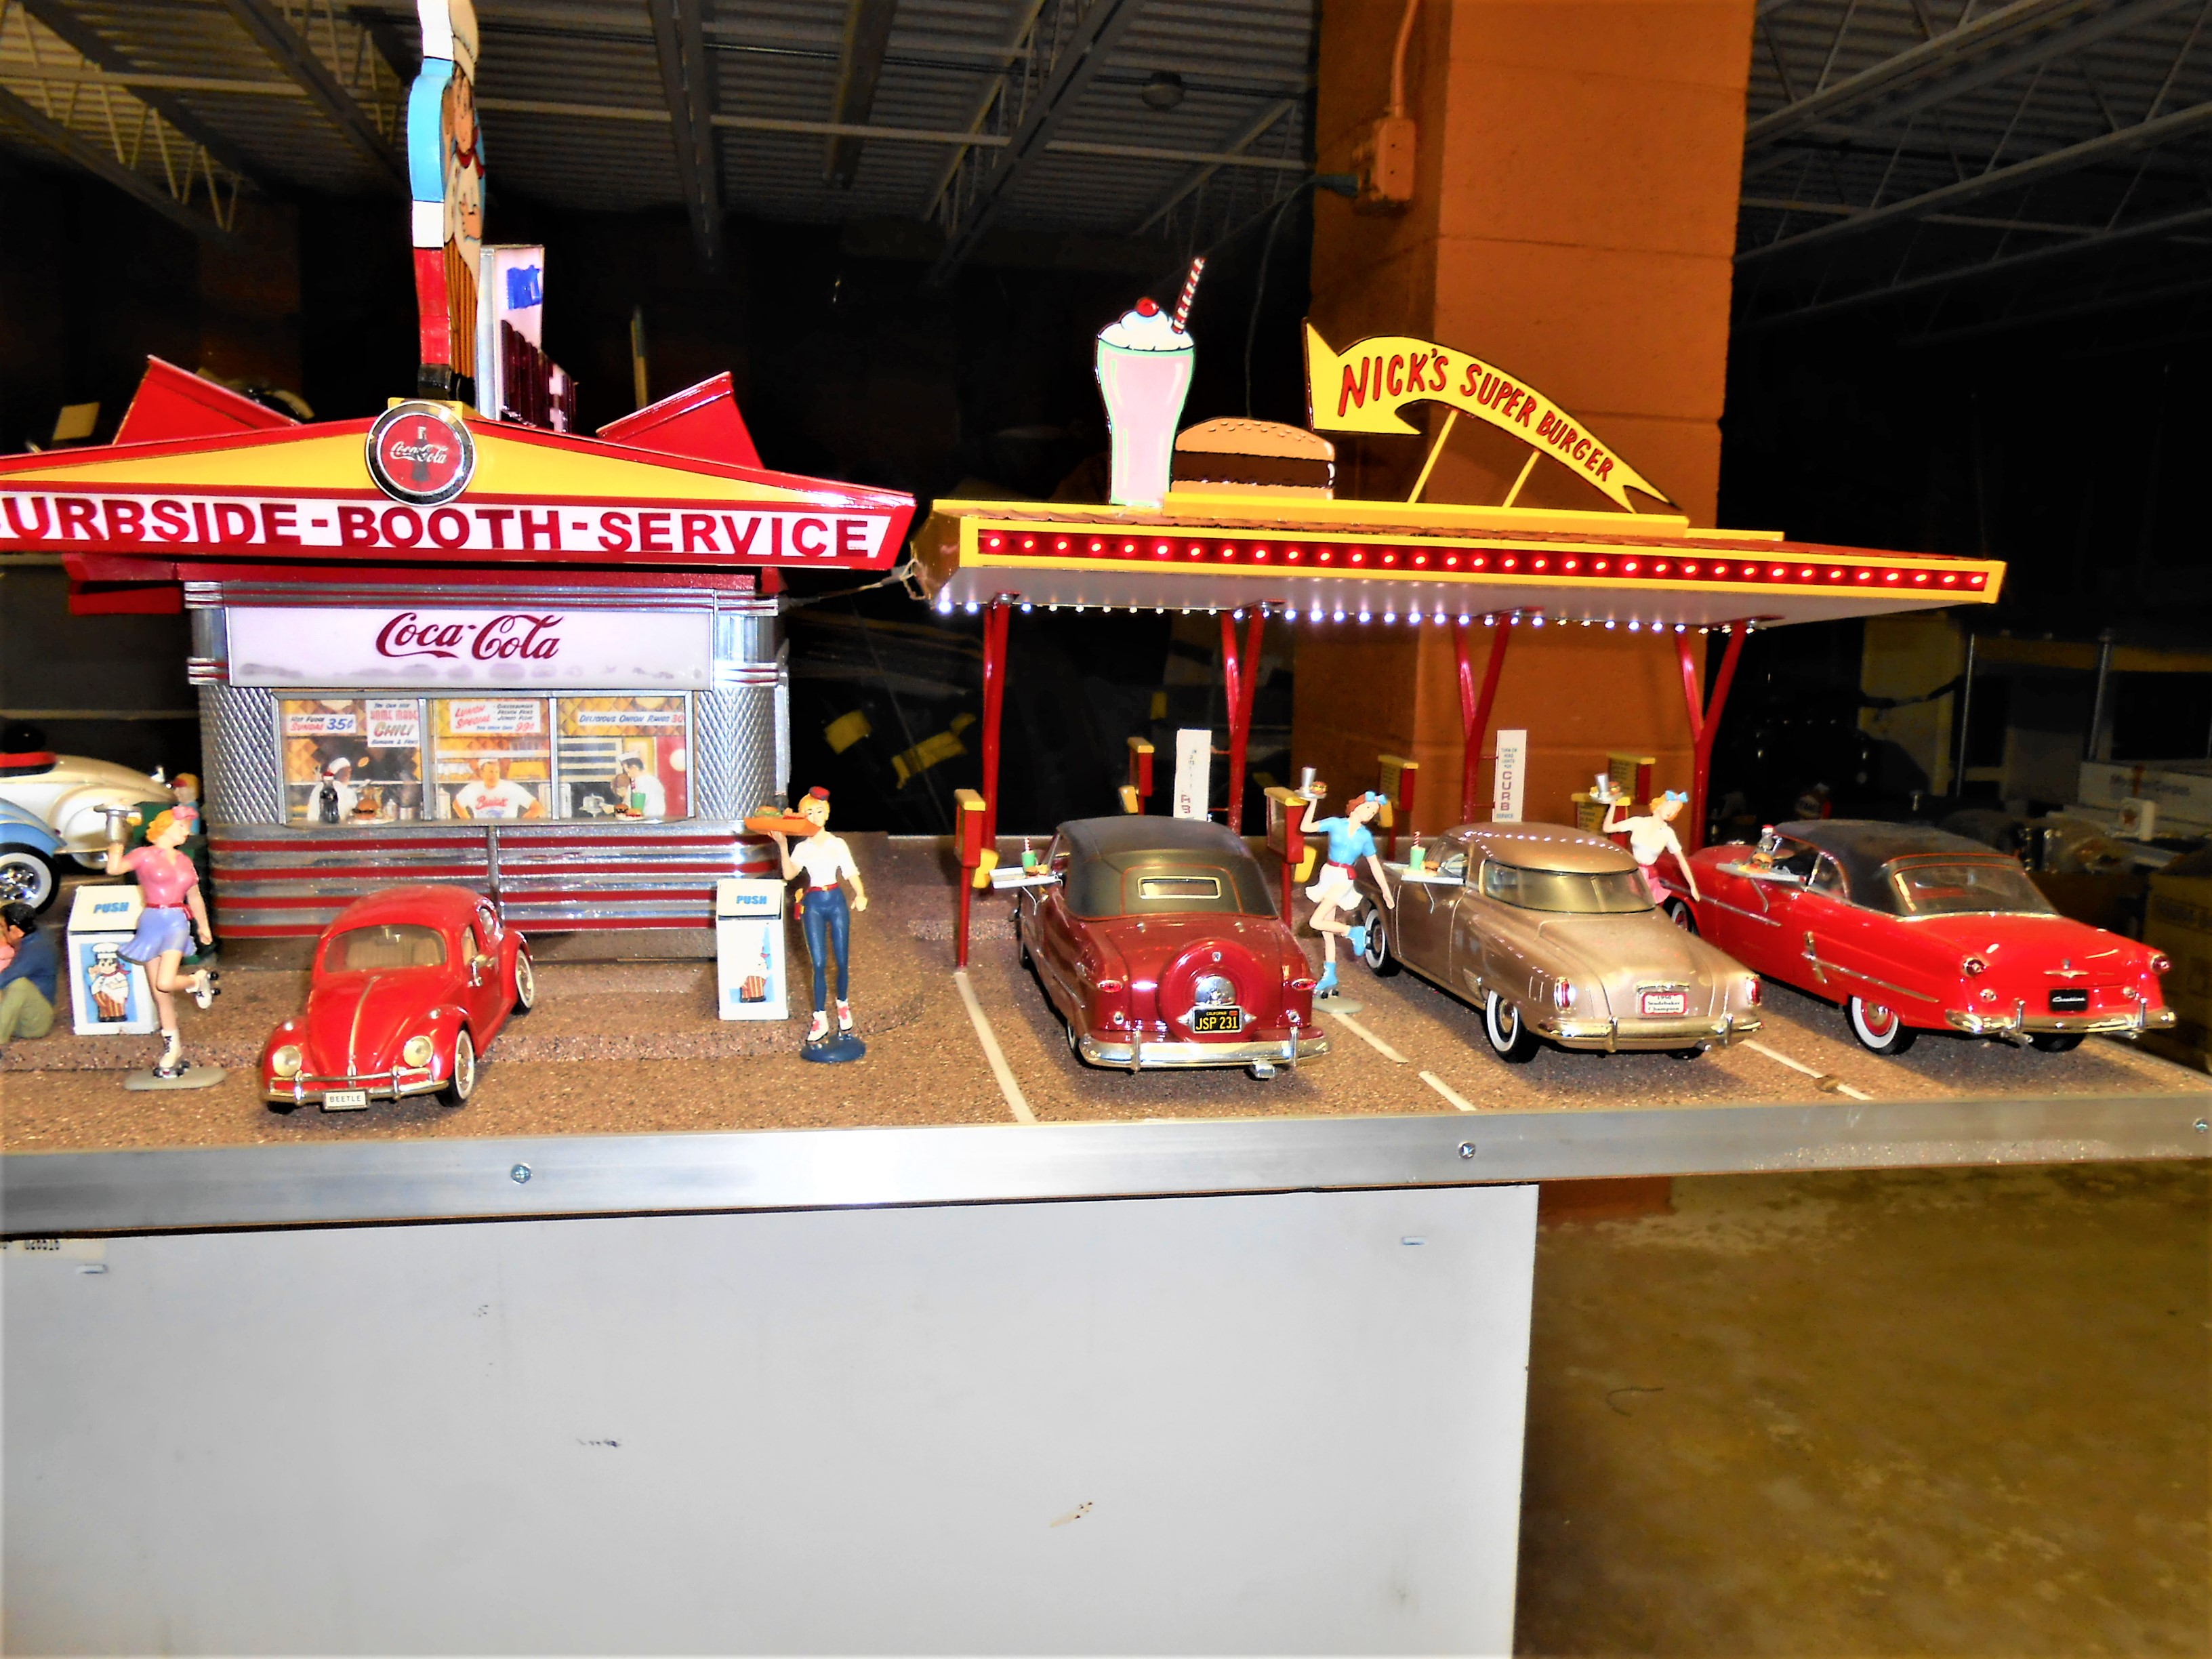 Nick's Super Burger Drive-In Diorama